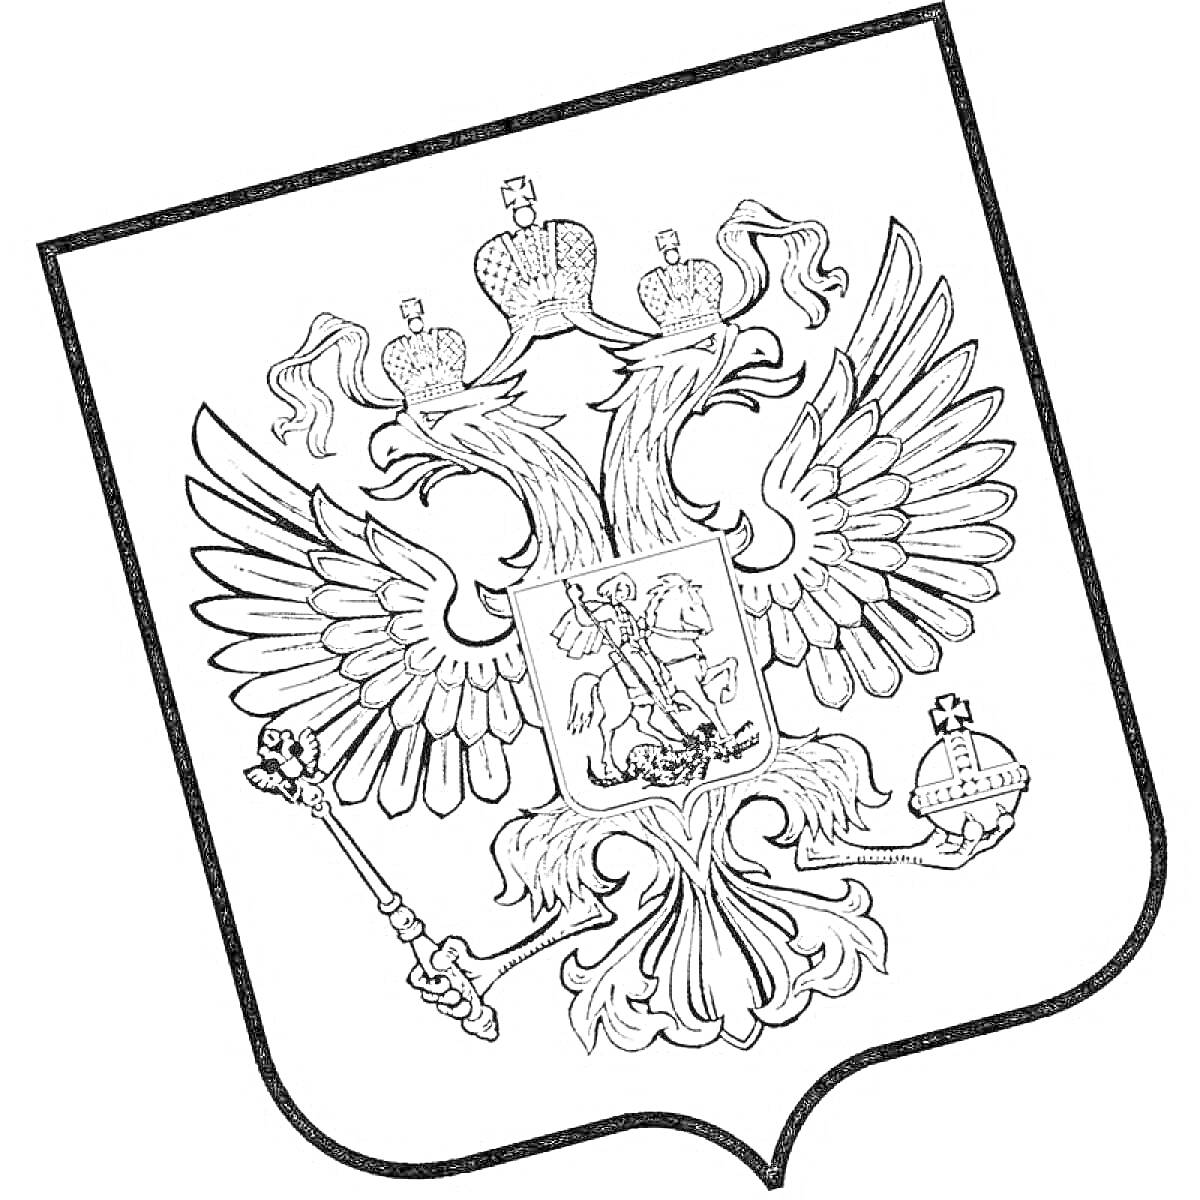 Раскраска Герб России с двуглавым орлом, держащим скипетр и державу, на груди орла изображен святой Георгий Победоносец, поражающий дракона